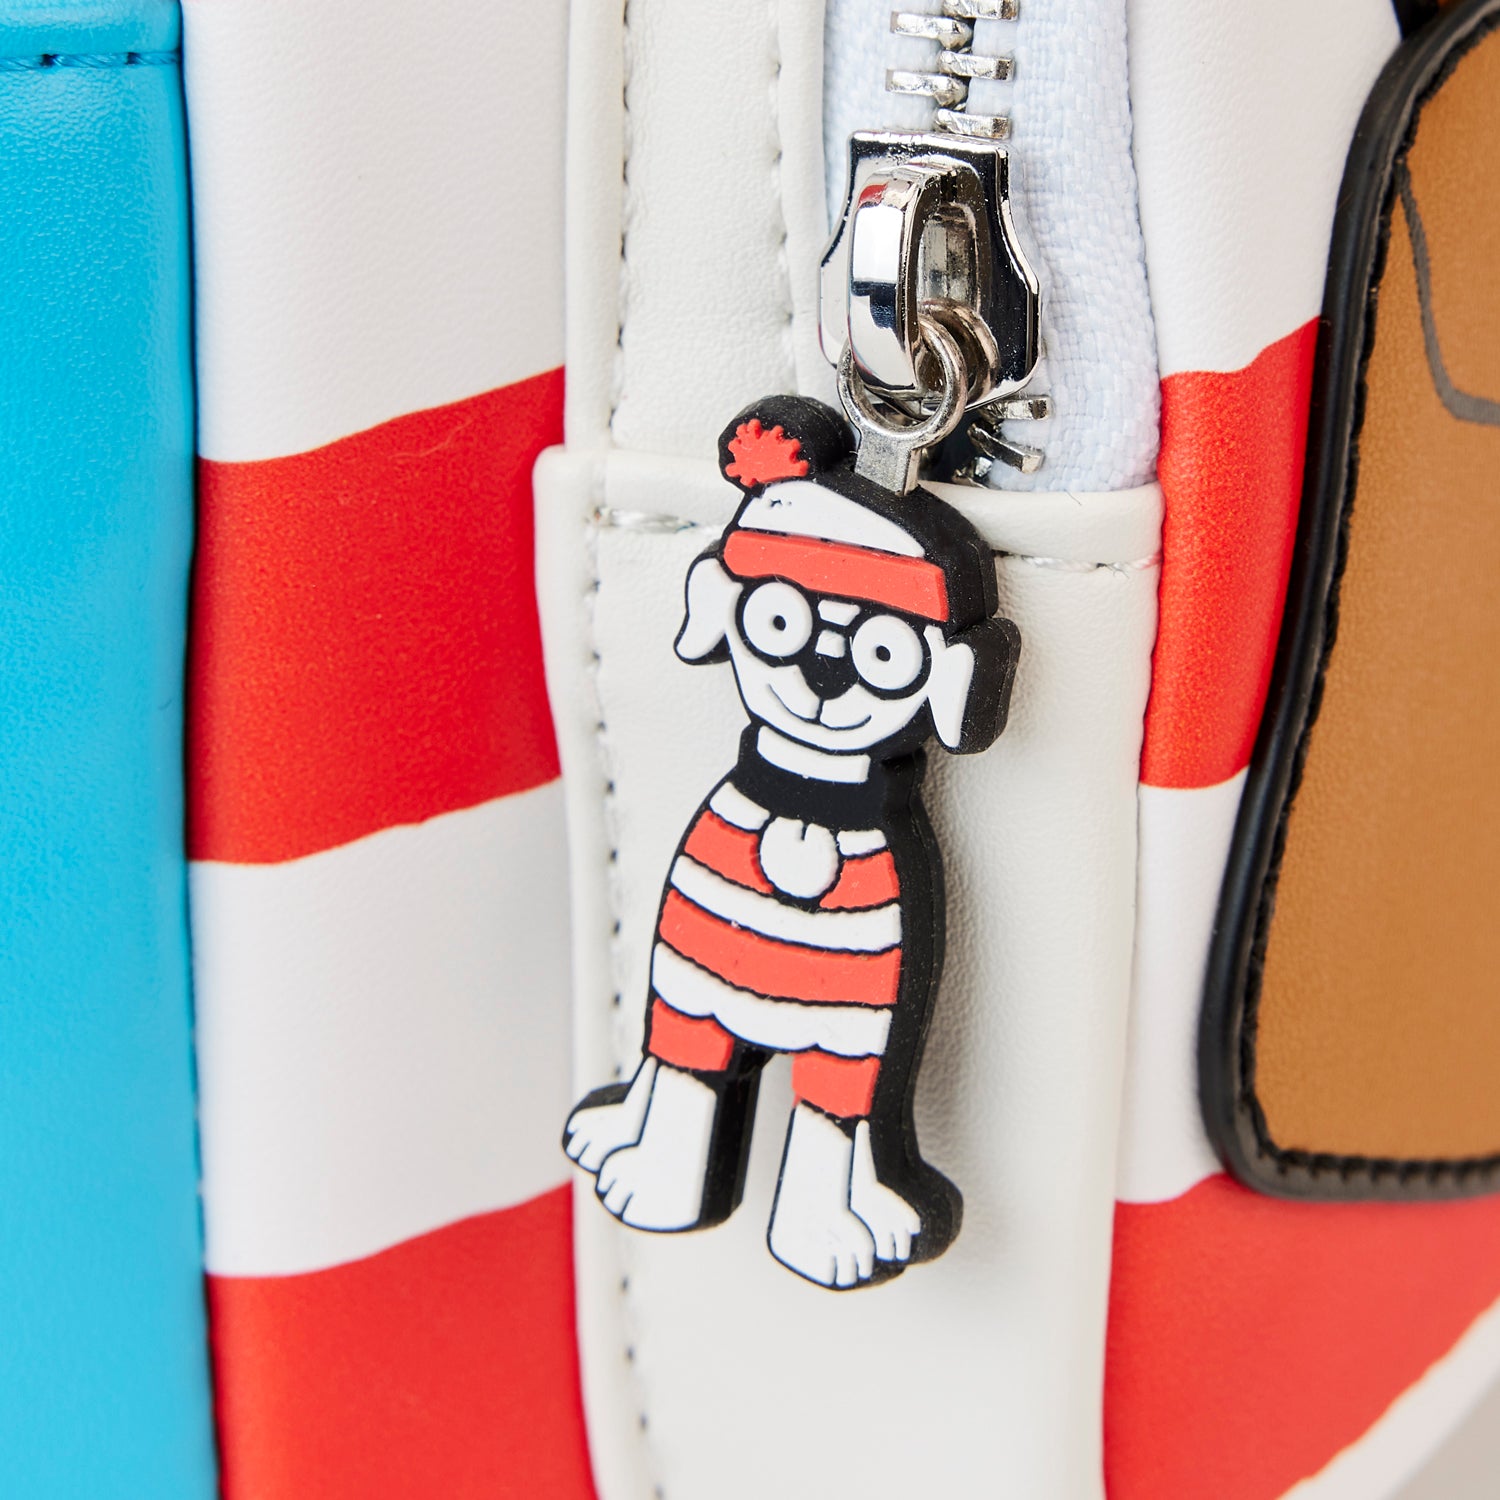 Where's Waldo | Waldo Cosplay Mini Backpack